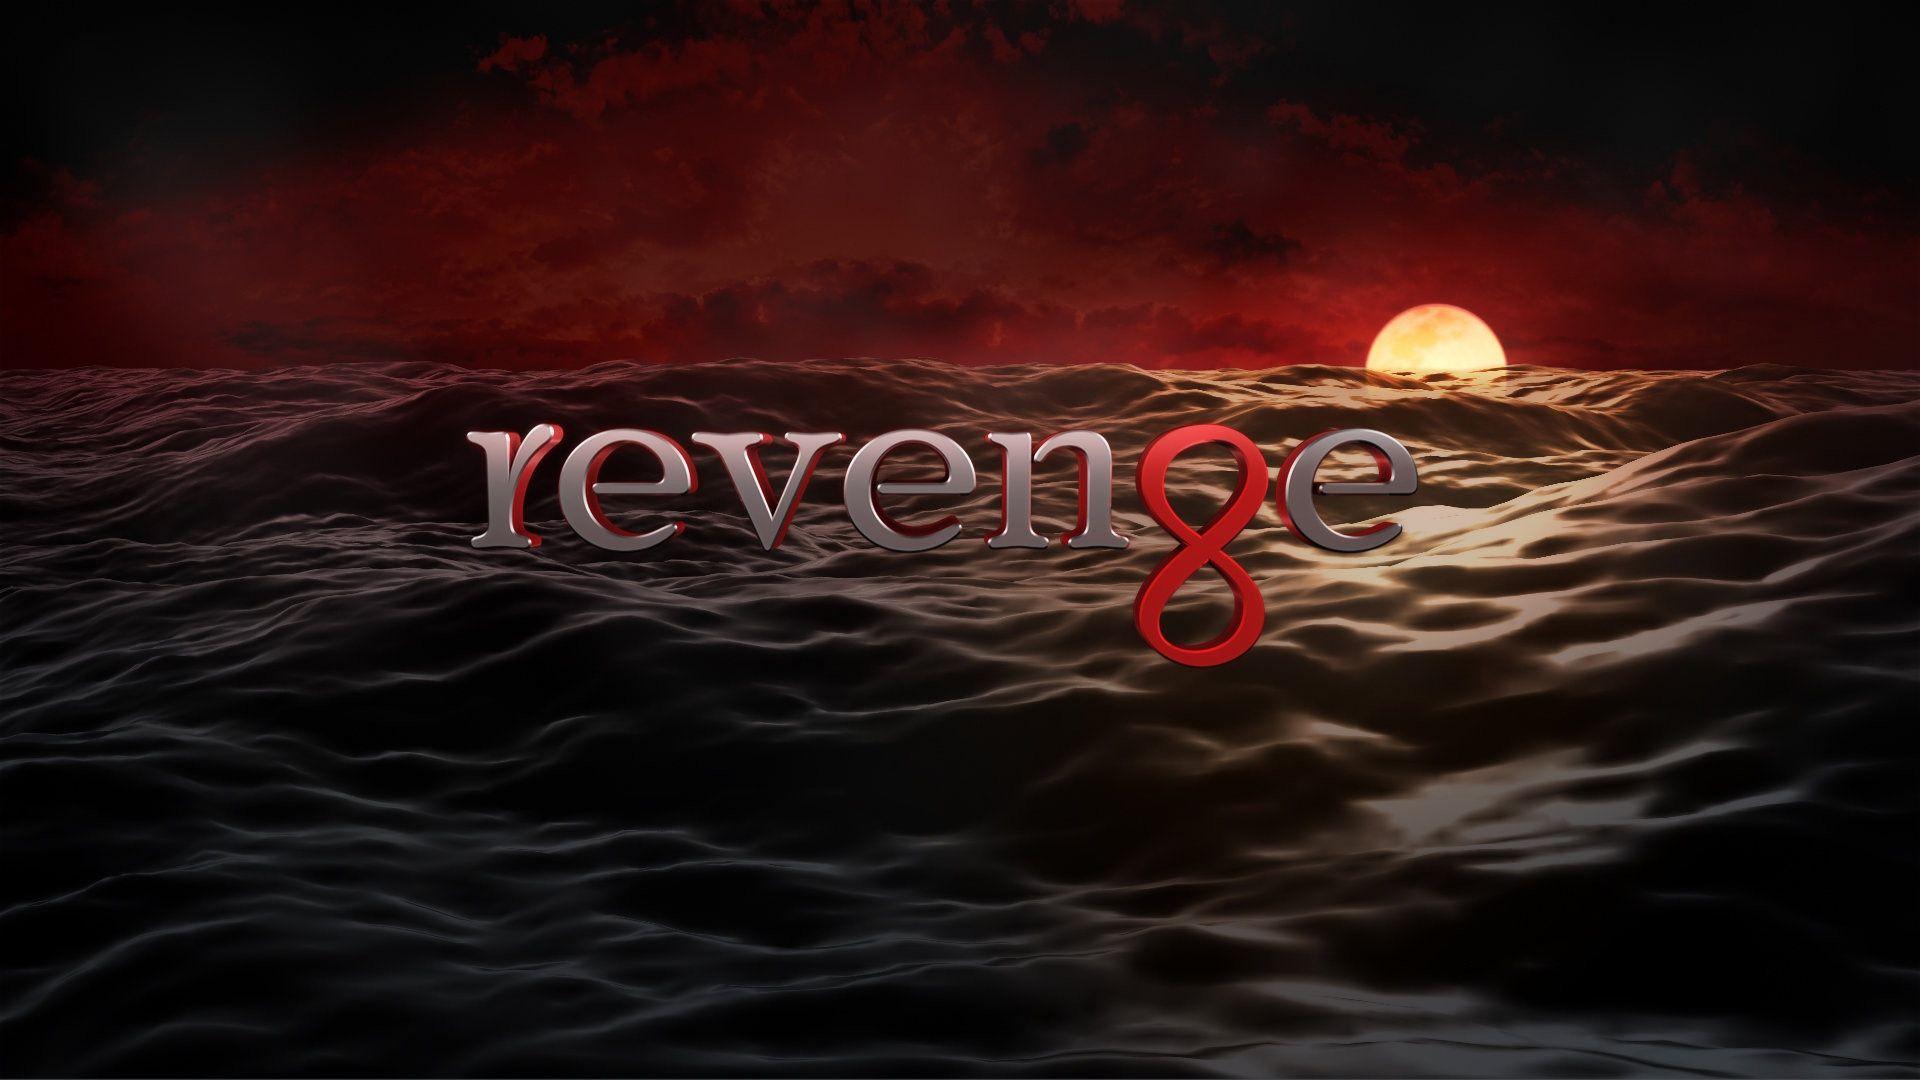 Amazing Background: Amazing Revenge Image Collection